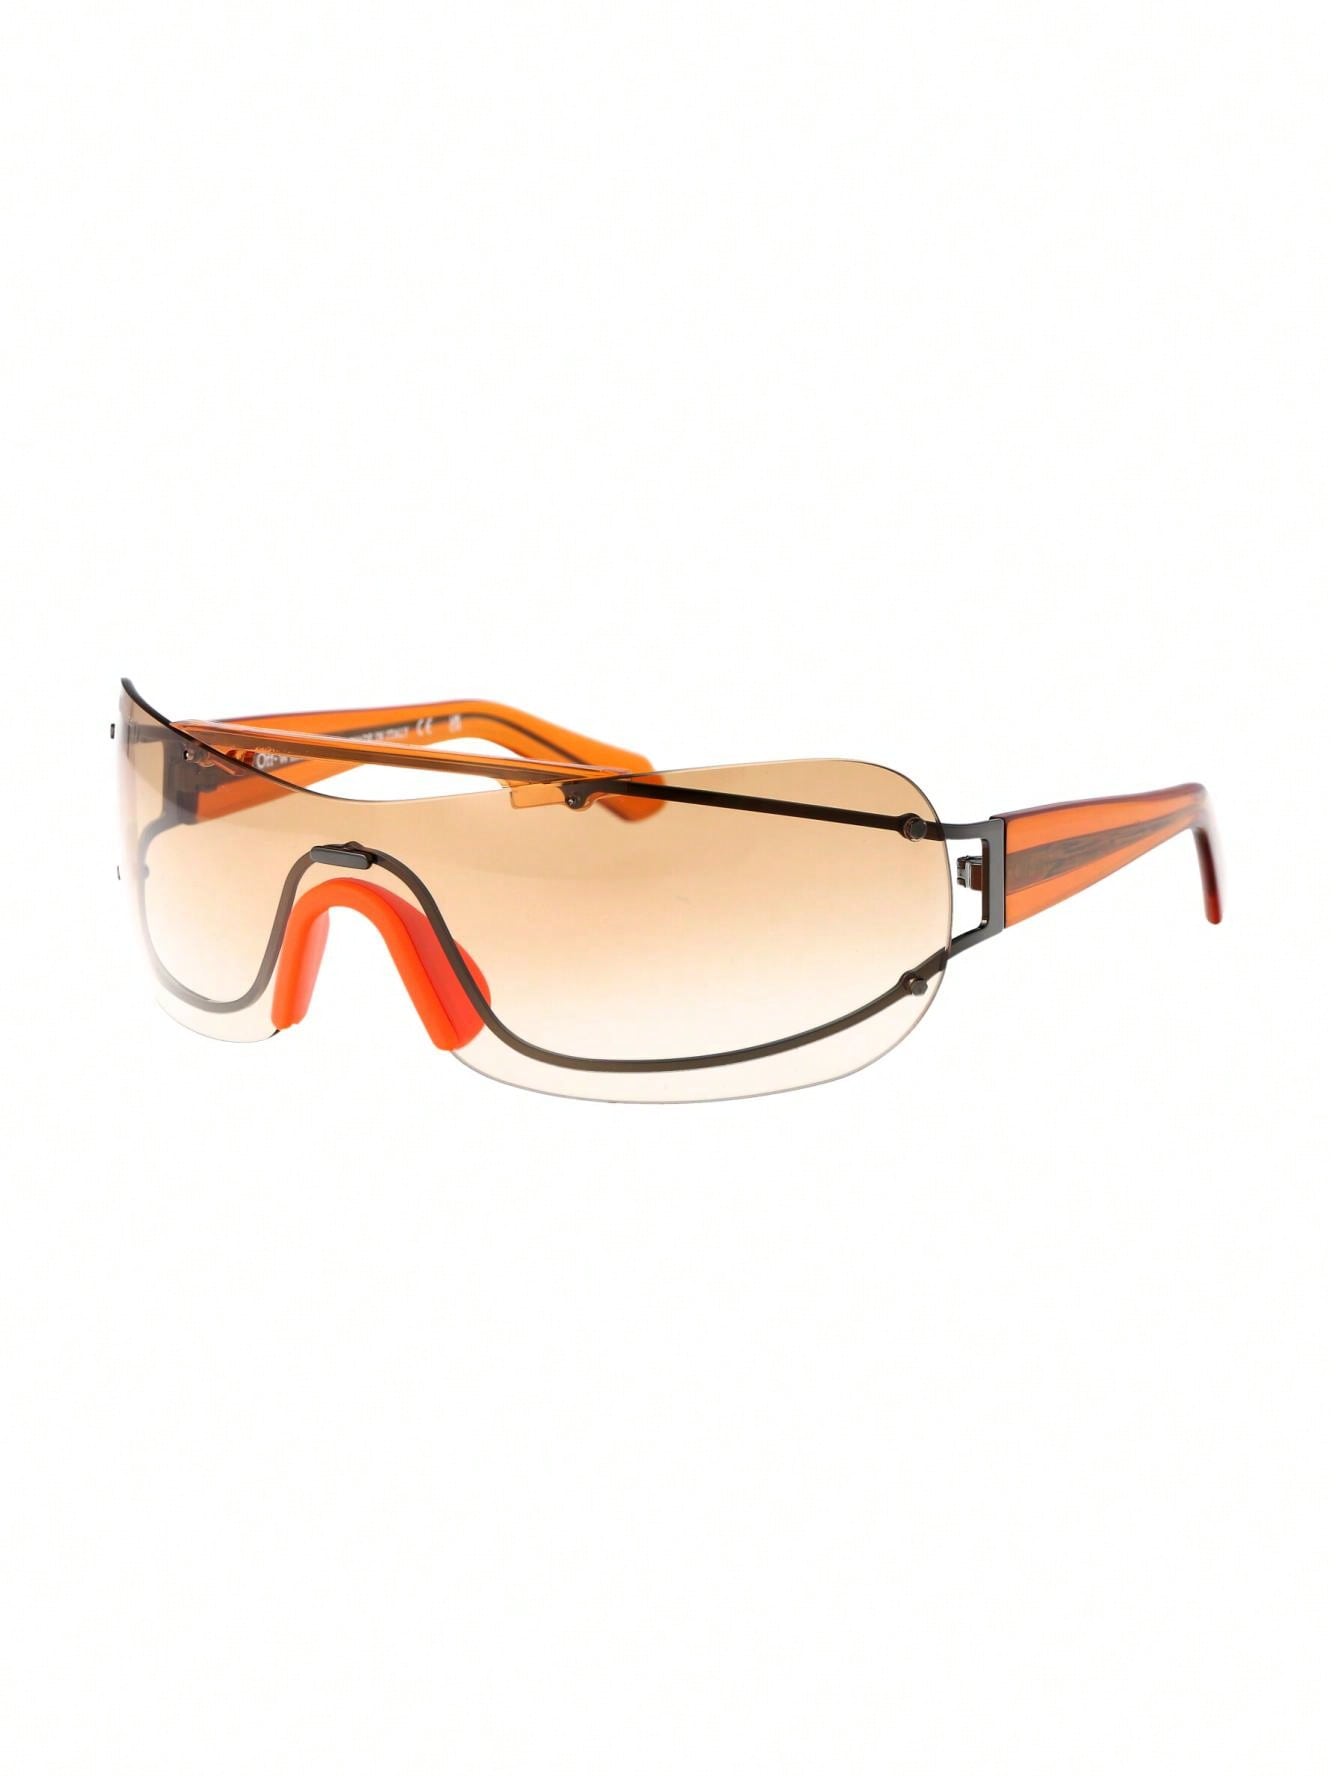 Мужские солнцезащитные очки Off-White DECOR OERI103F23MET0017720, многоцветный цена и фото